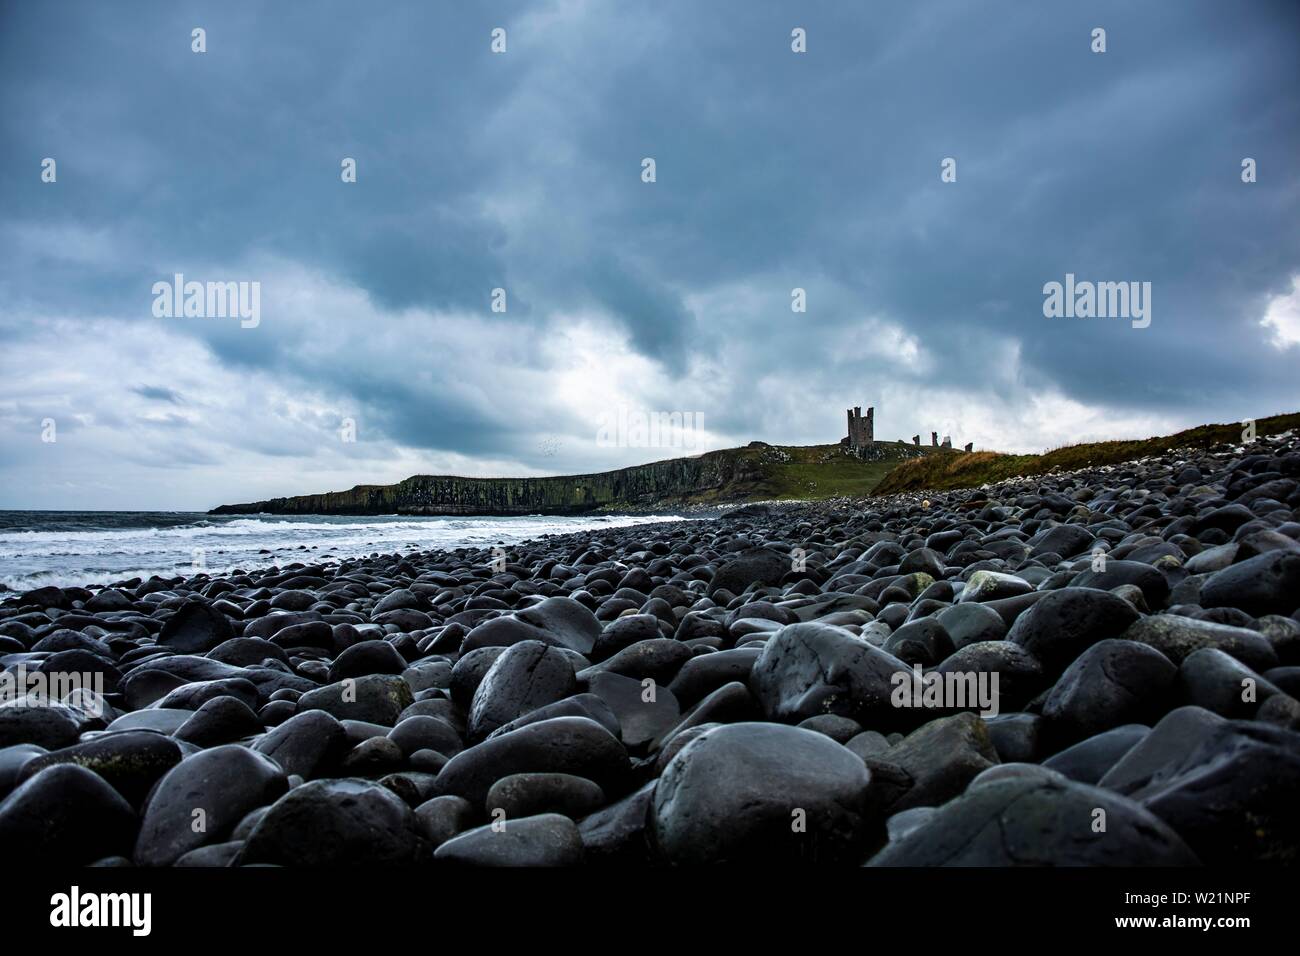 Negro, ronda de las rocas de la costa, el castillo de Dunstanburgh con cielo nublado en la espalda, Craster, Northumberland, Gran Bretaña Foto de stock